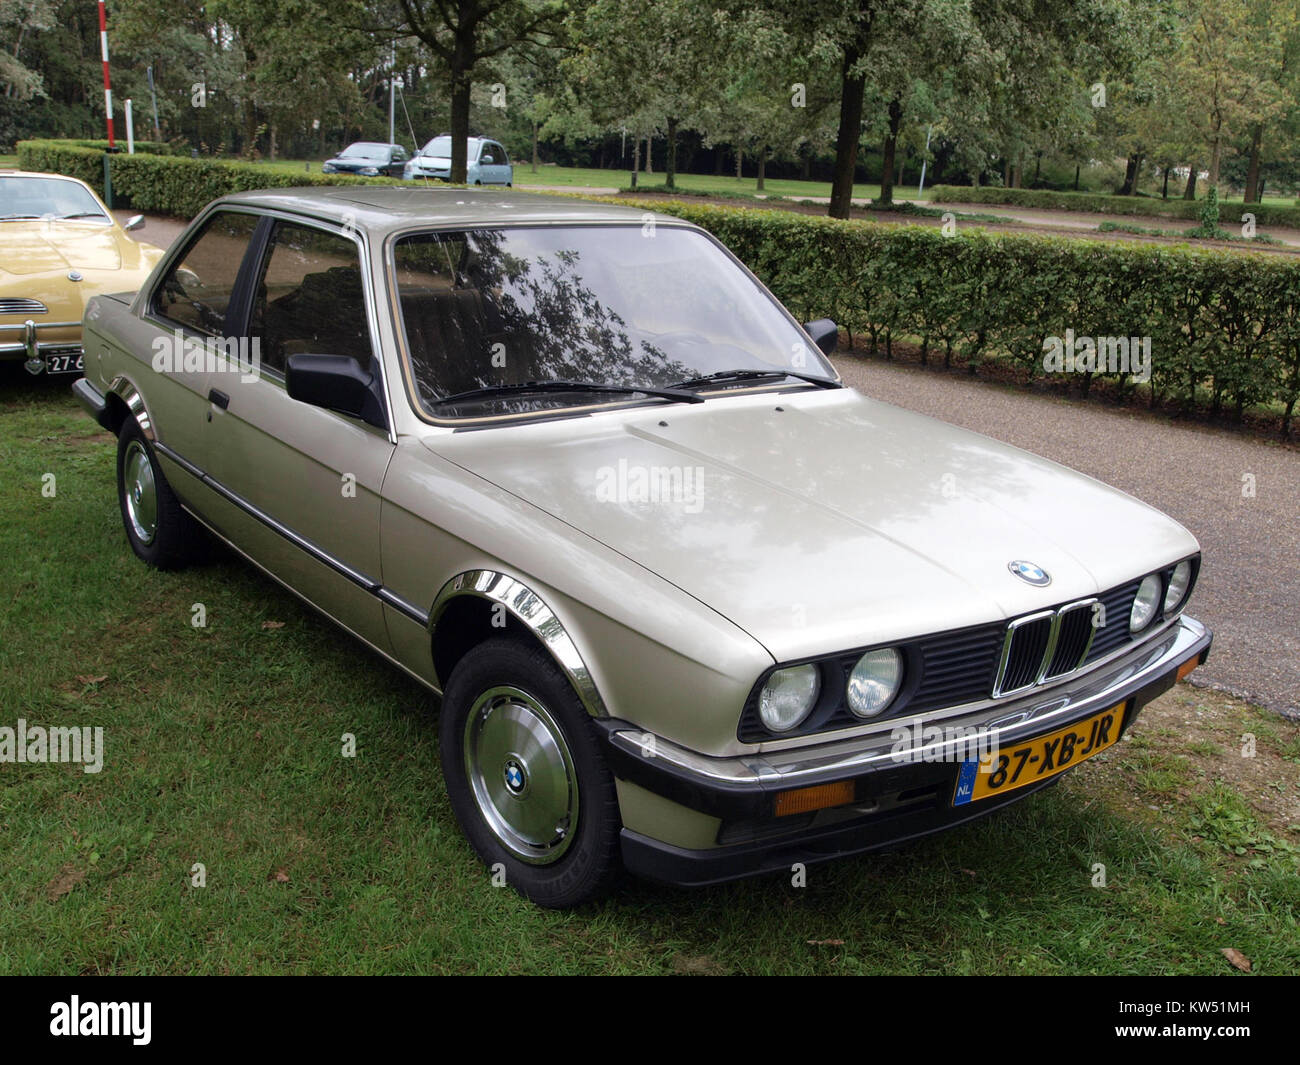 BMW 3slash1 (1985) at the Autotron, dutch licence registration 87 XB JR p1 Stock Photo